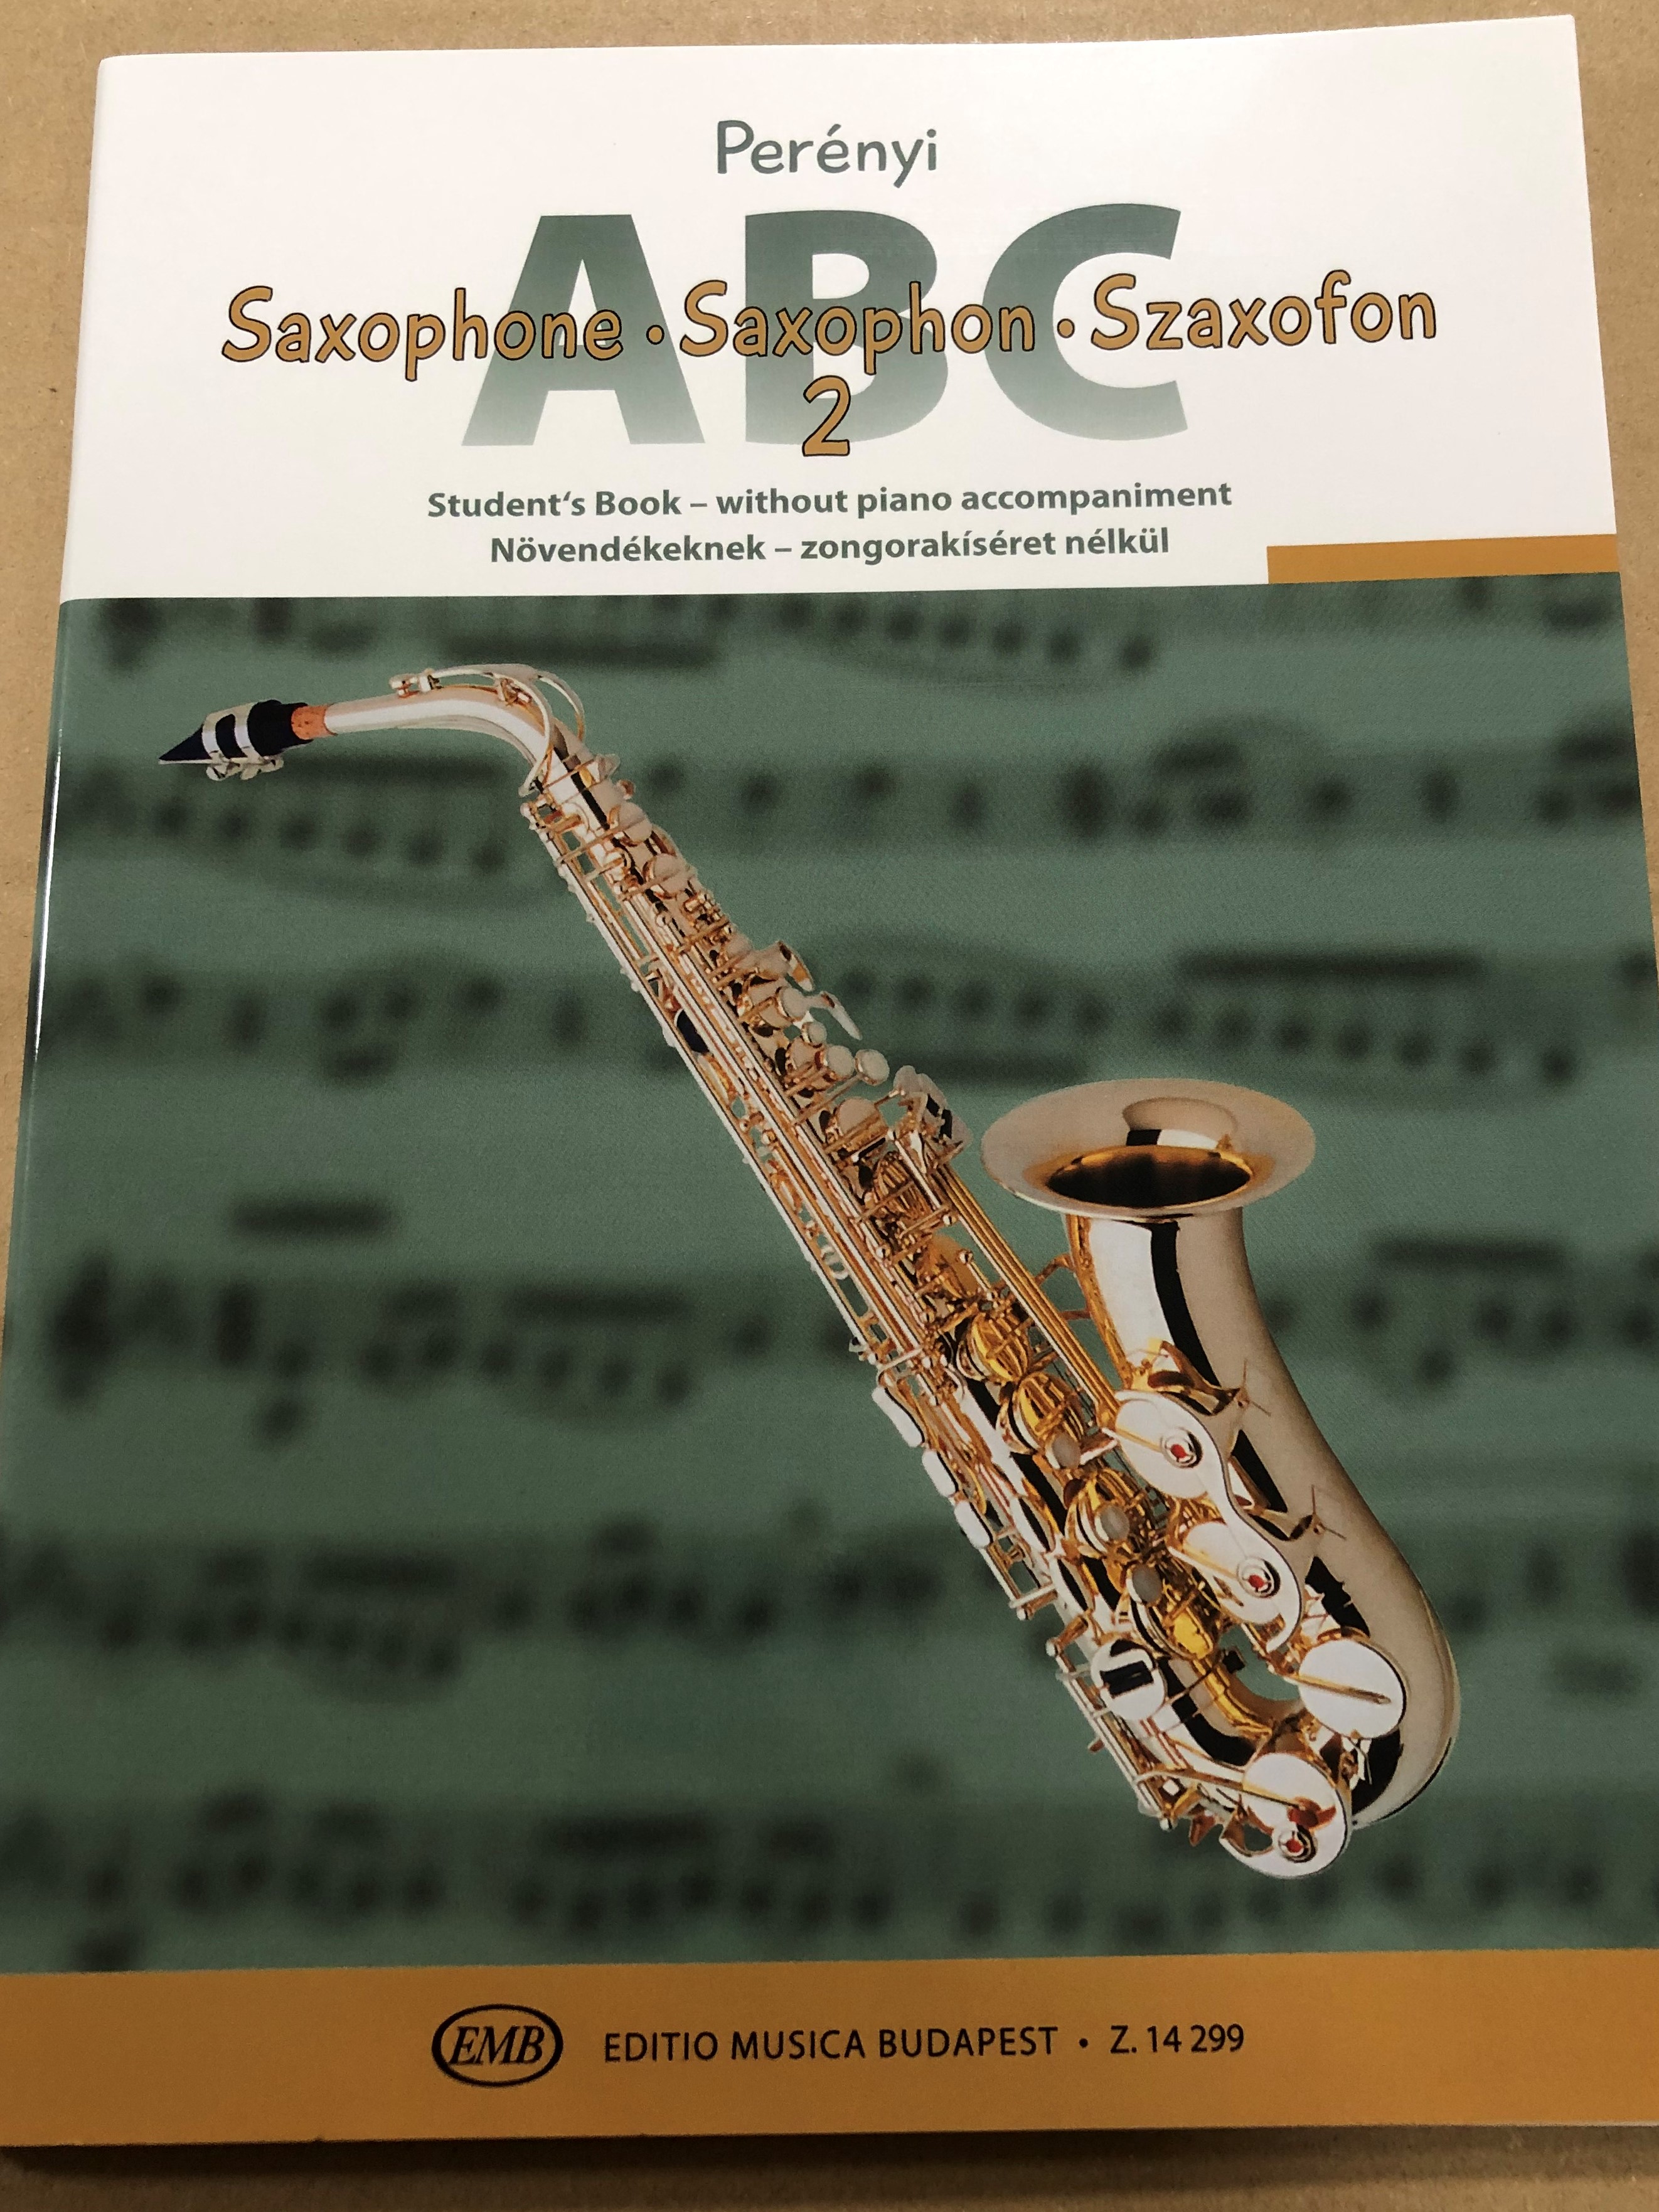 Saxophone ABC 2 - Saxophon - Szaxofon ABC 2 - Perényi / Student's Book -  without piano accompaniment / Növendékeknek - zongorakíséret nélkül /  Editio Musica Budapest Z.14299 - bibleinmylanguage